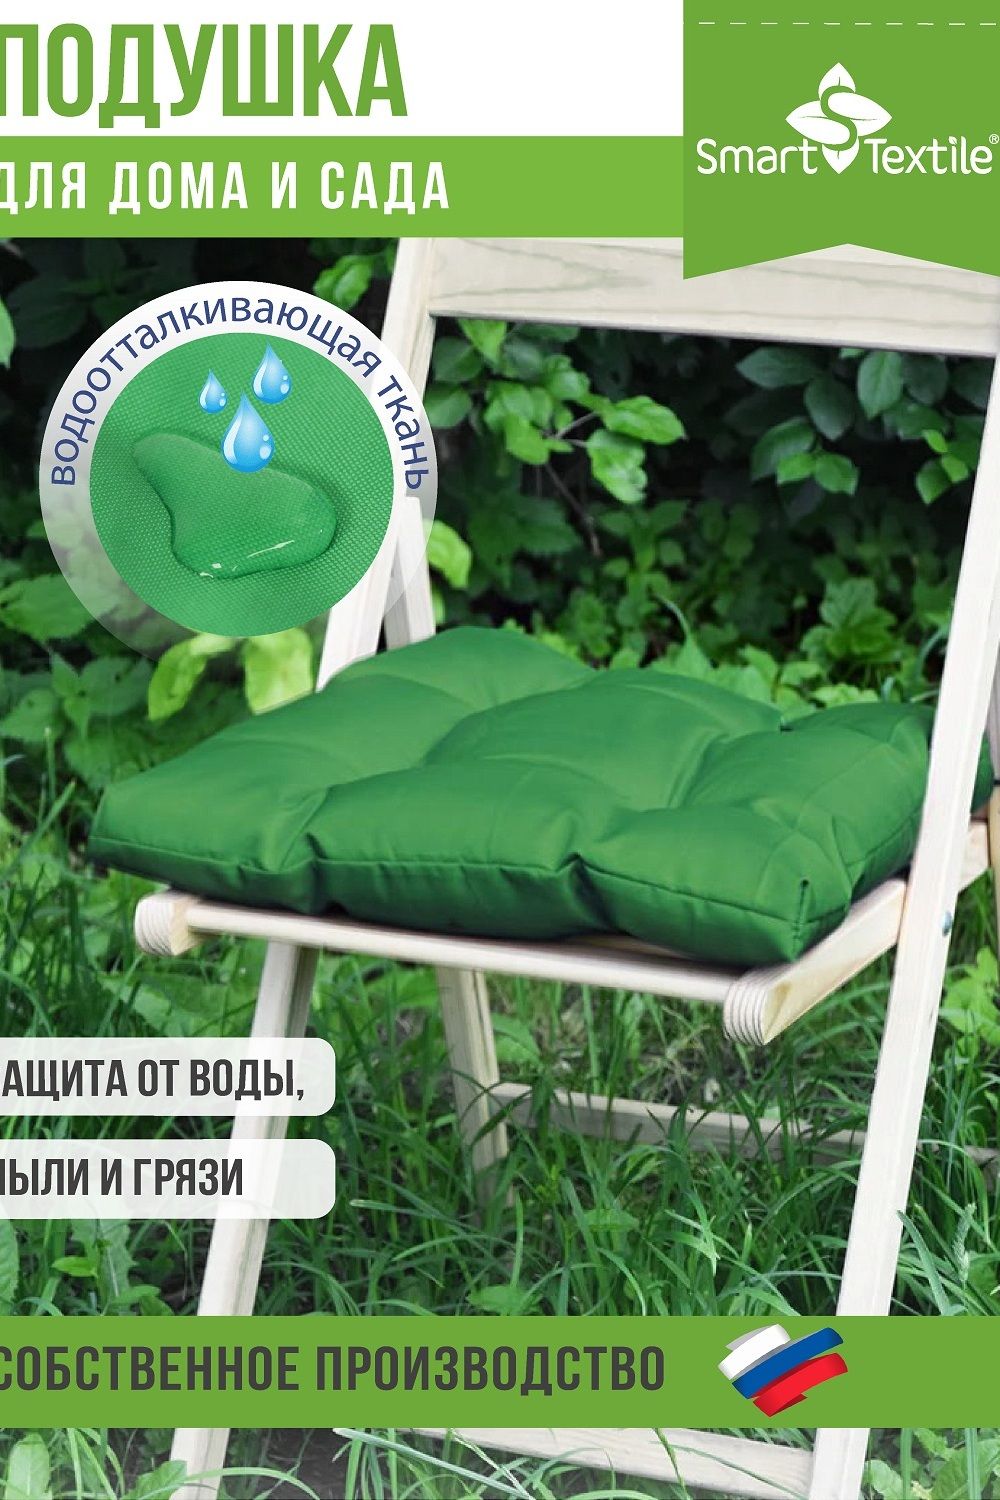 Подушка на сиденье Альфа, р.40х40см - зеленый